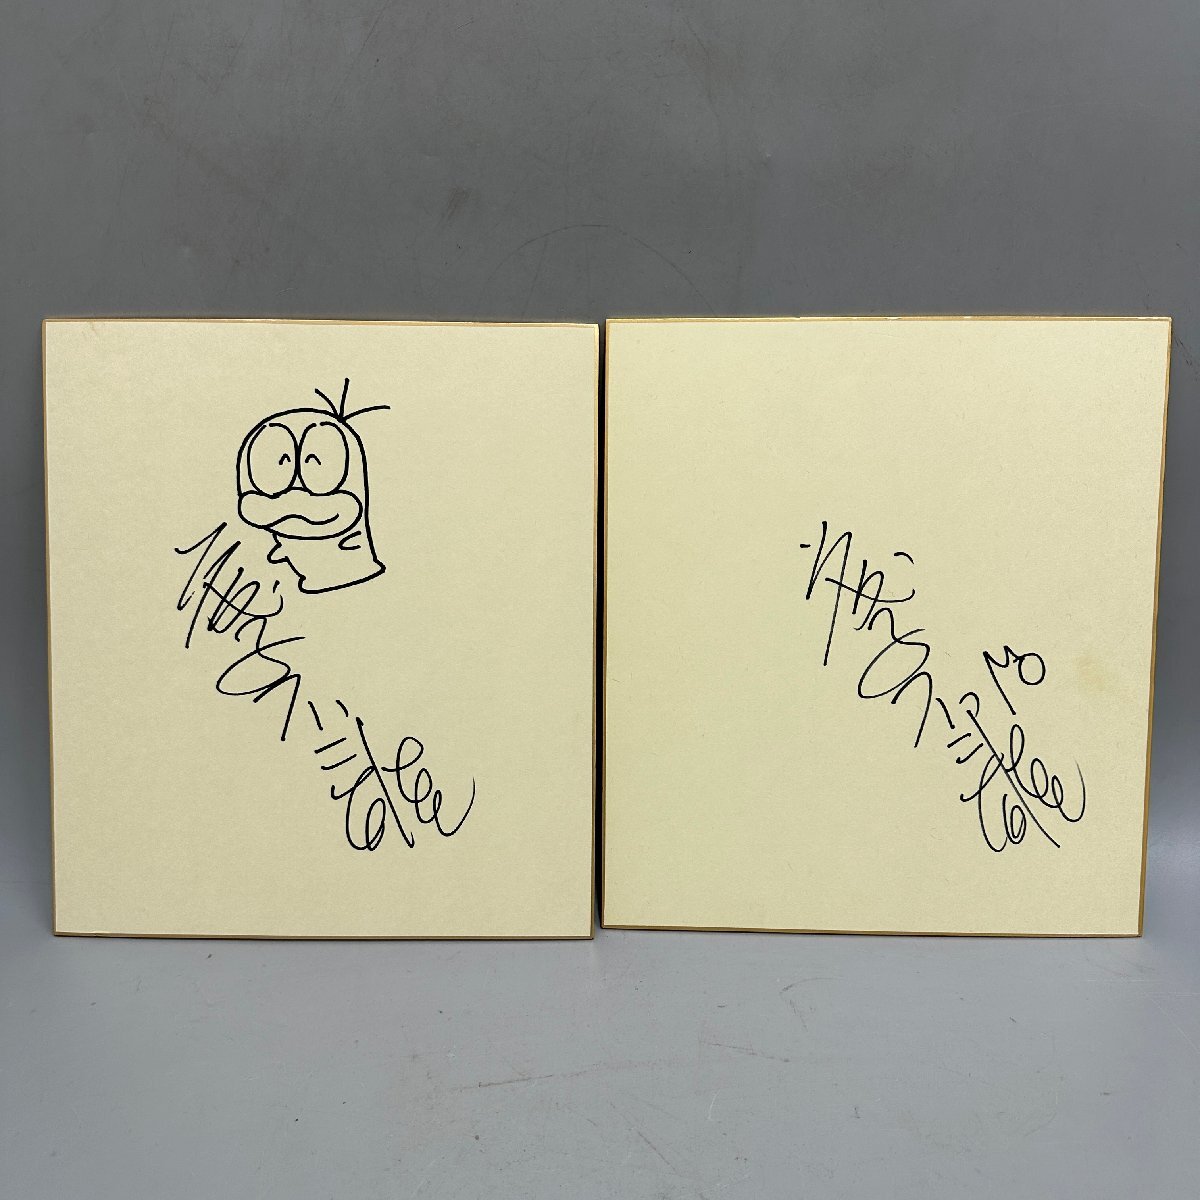 ●○[4] توقيع فوجيكو فوجيو توقيع ورقي ملون 2 نقطة Ghost Q Taro 06/040204s○●, كاريكاتير, سلع الانمي, لافتة, اللوحة المرسومة باليد